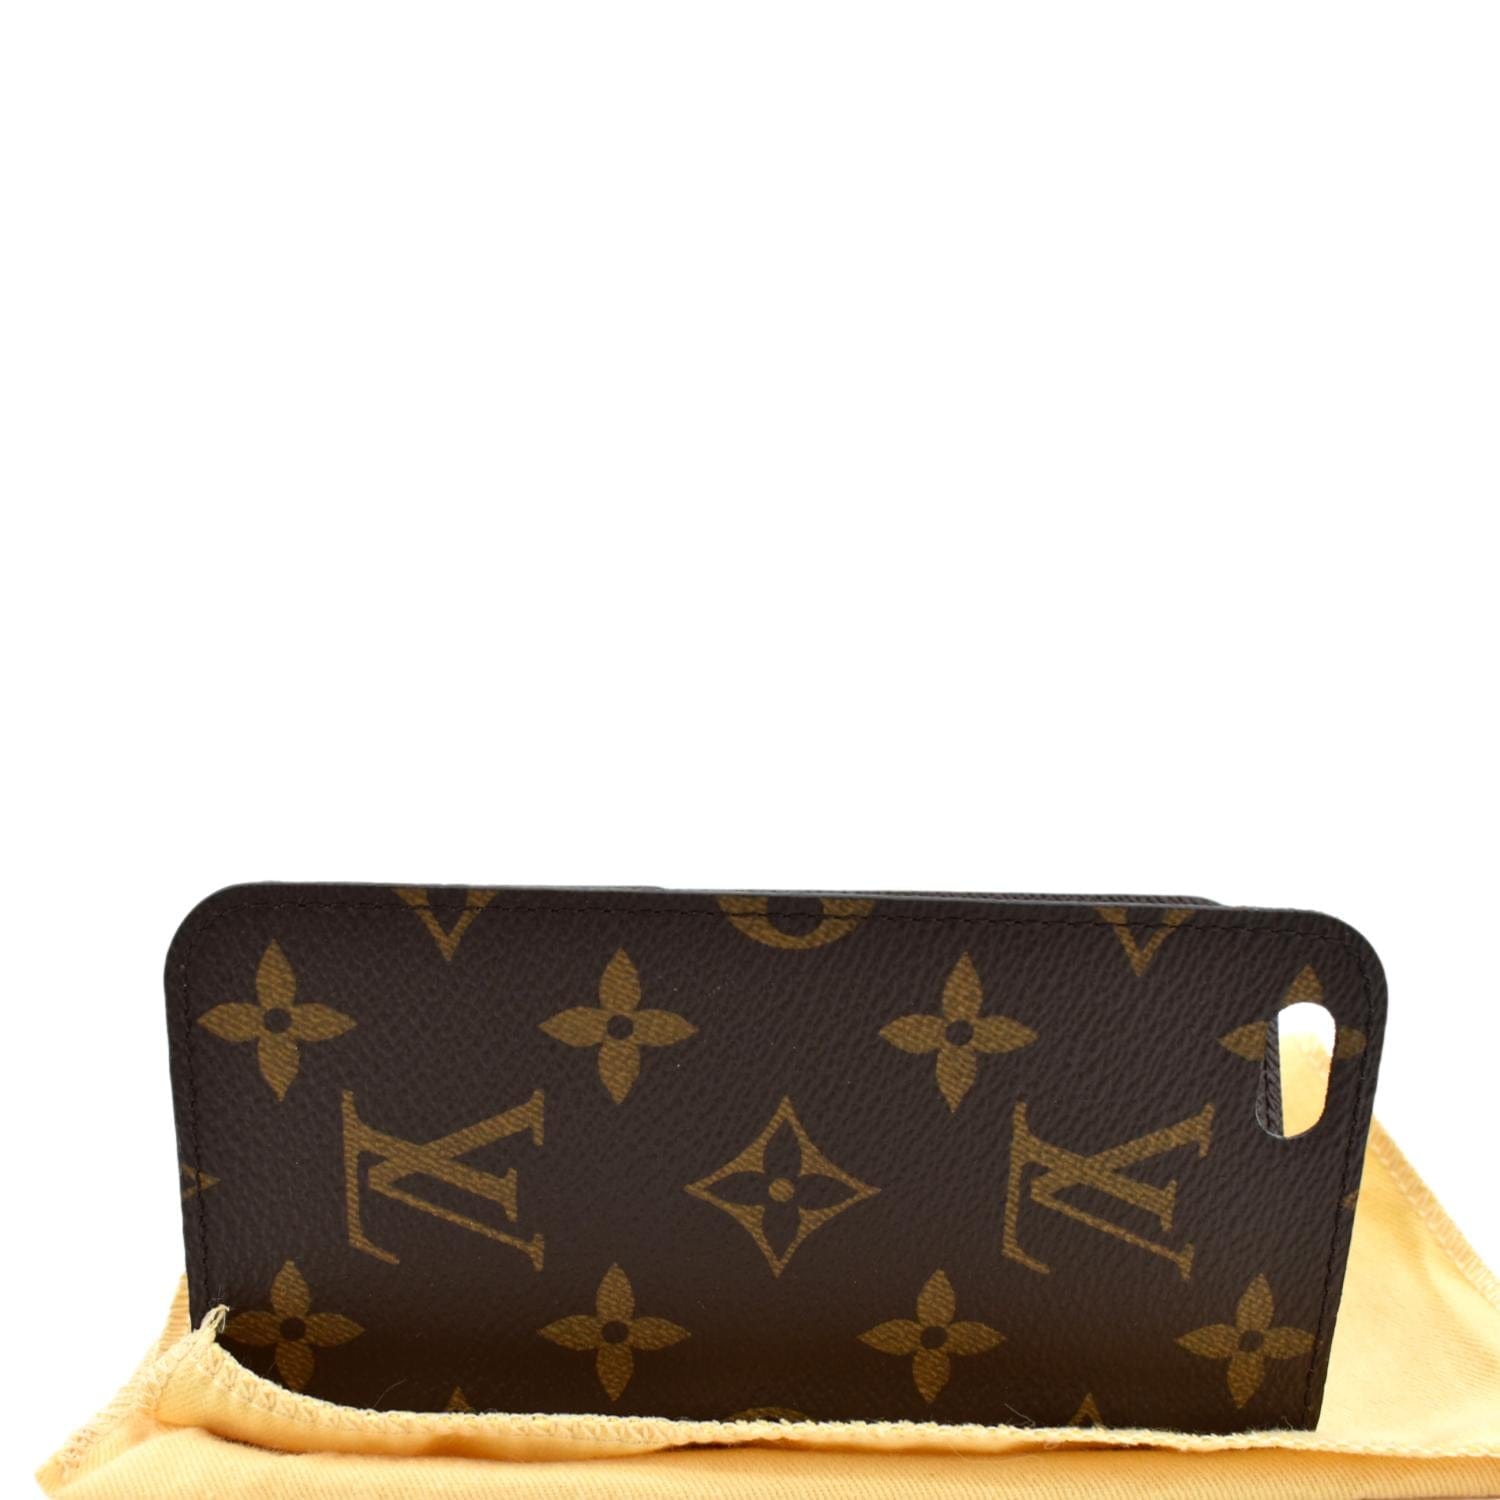 Louis Vuitton iPhone Case Wallet 